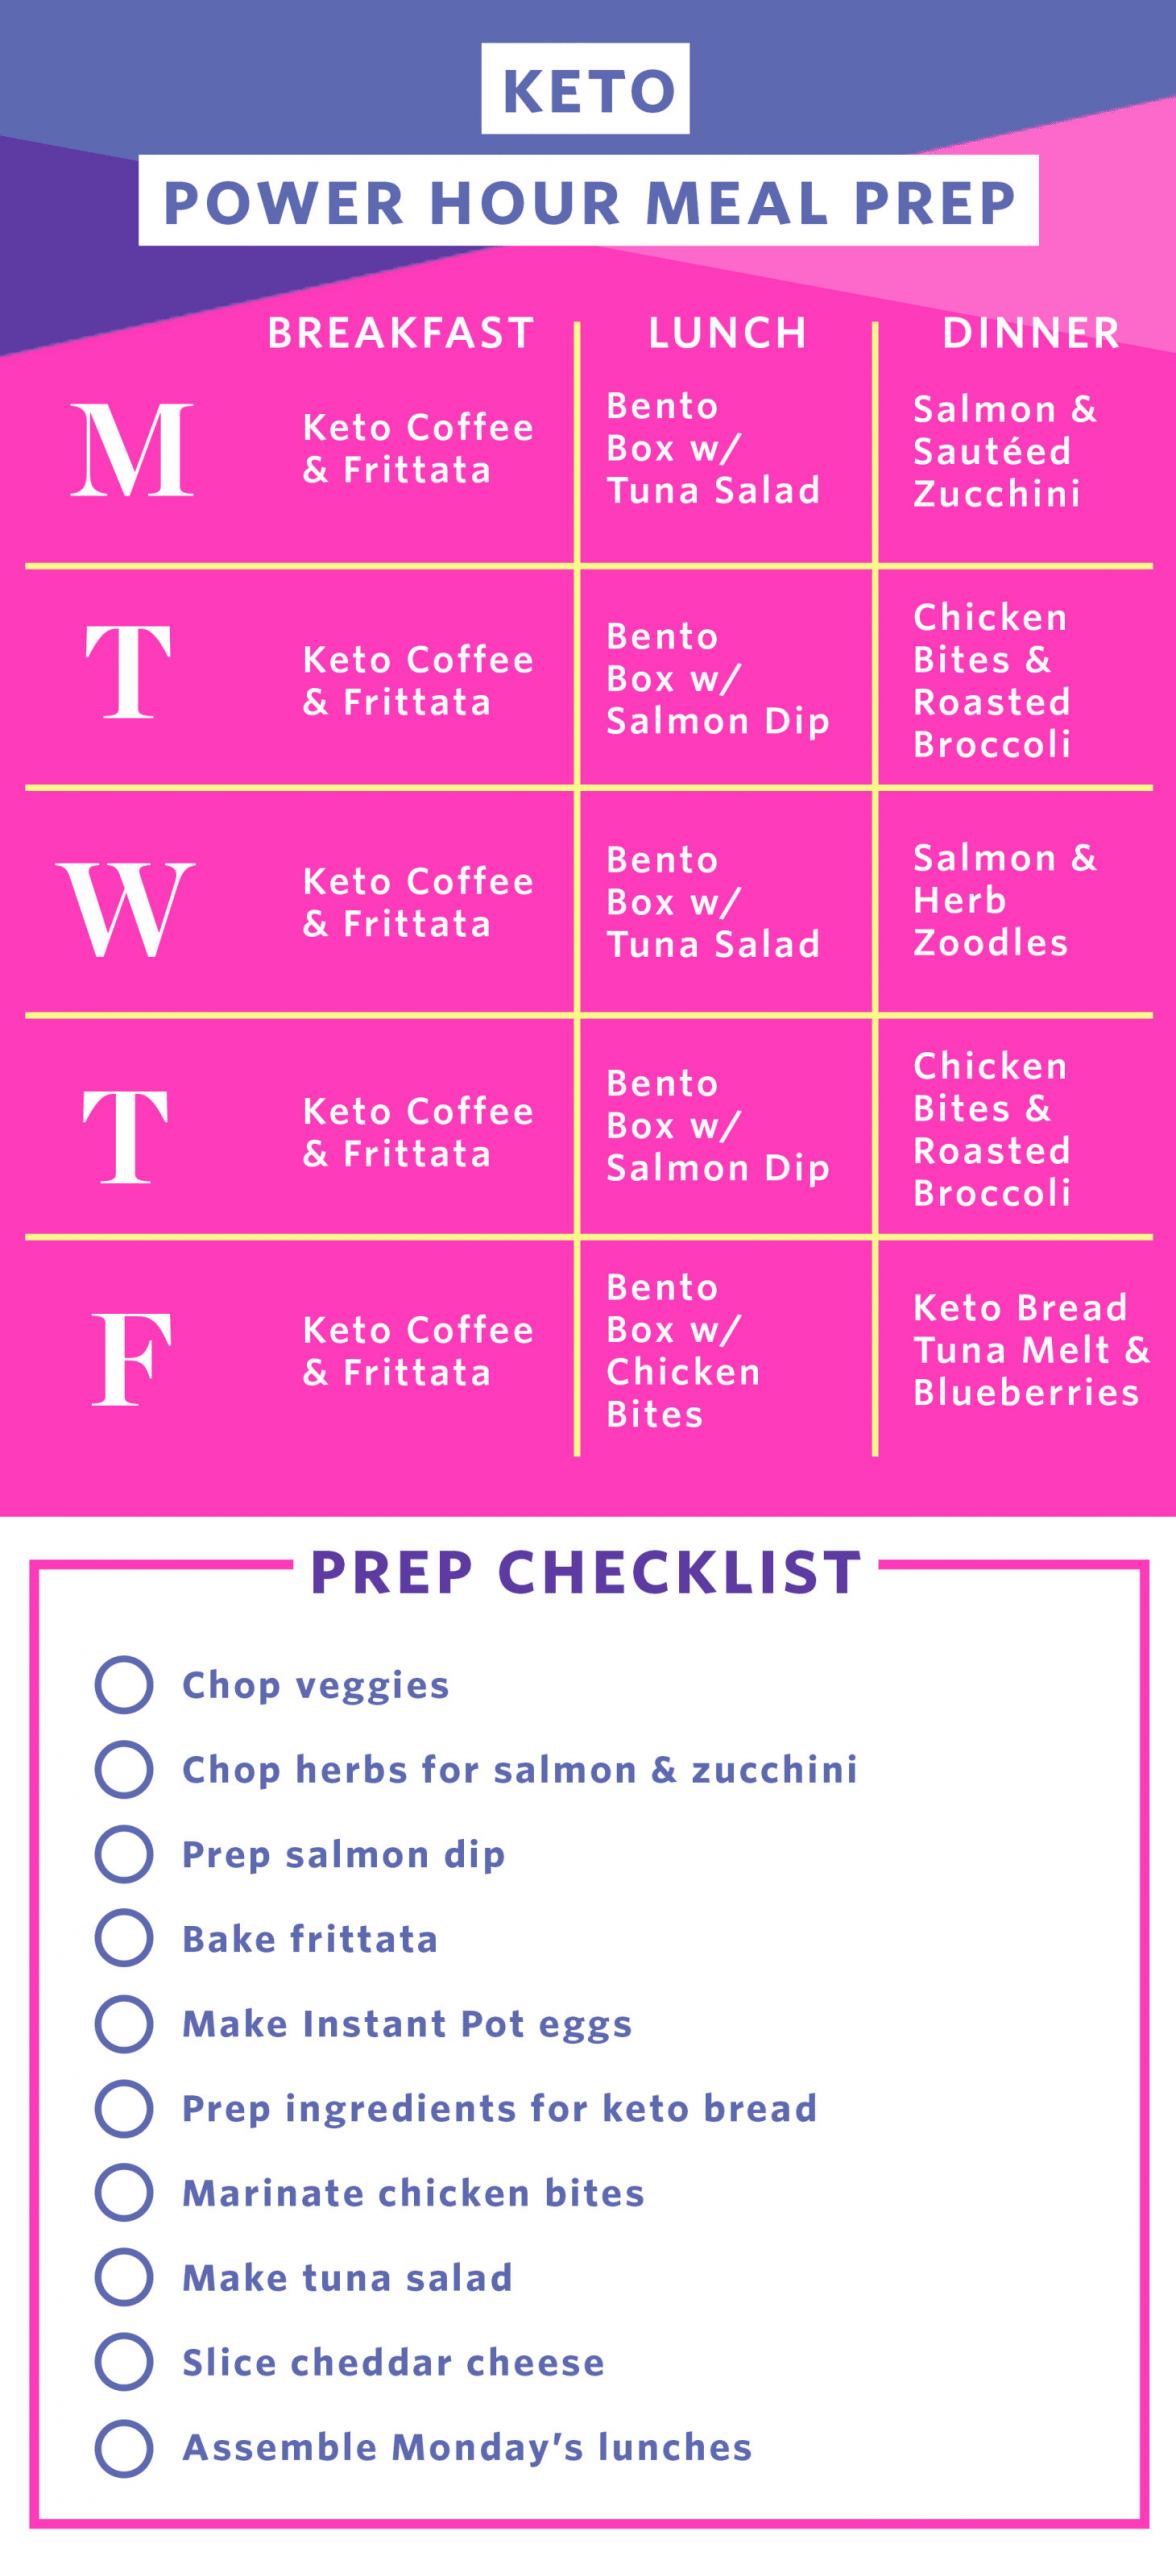 Keto Diet For Beginners Week 1 Easy Meal Plan
 Fast Keto Meal Prep in Under 2 Hours